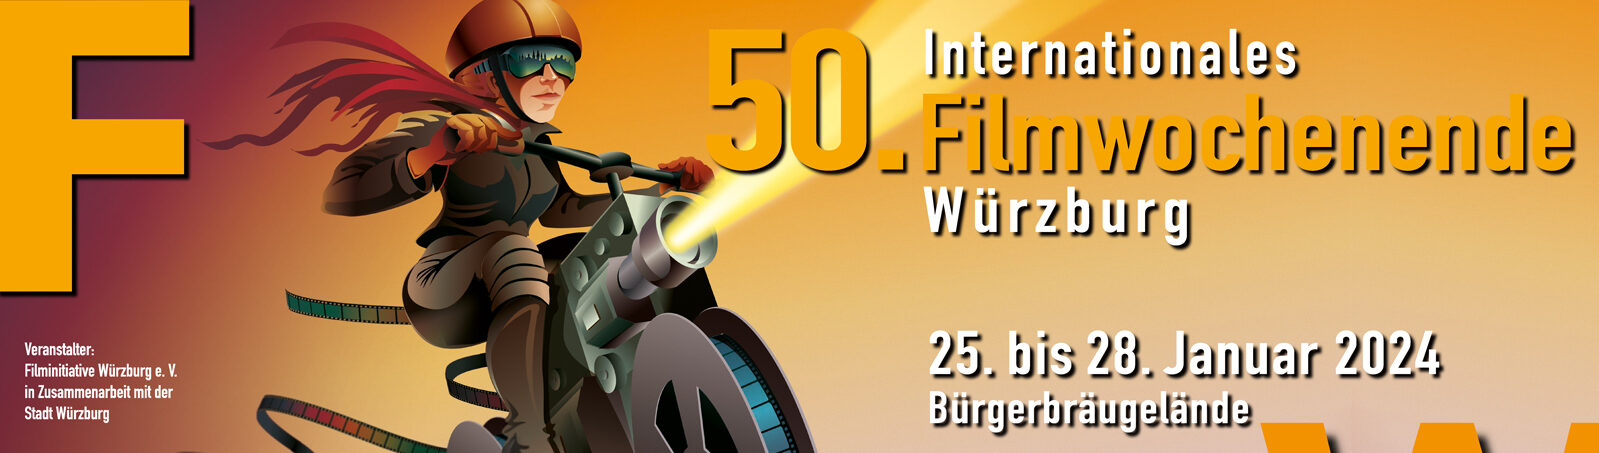 50. Internationales Filmwochenende Würzburg